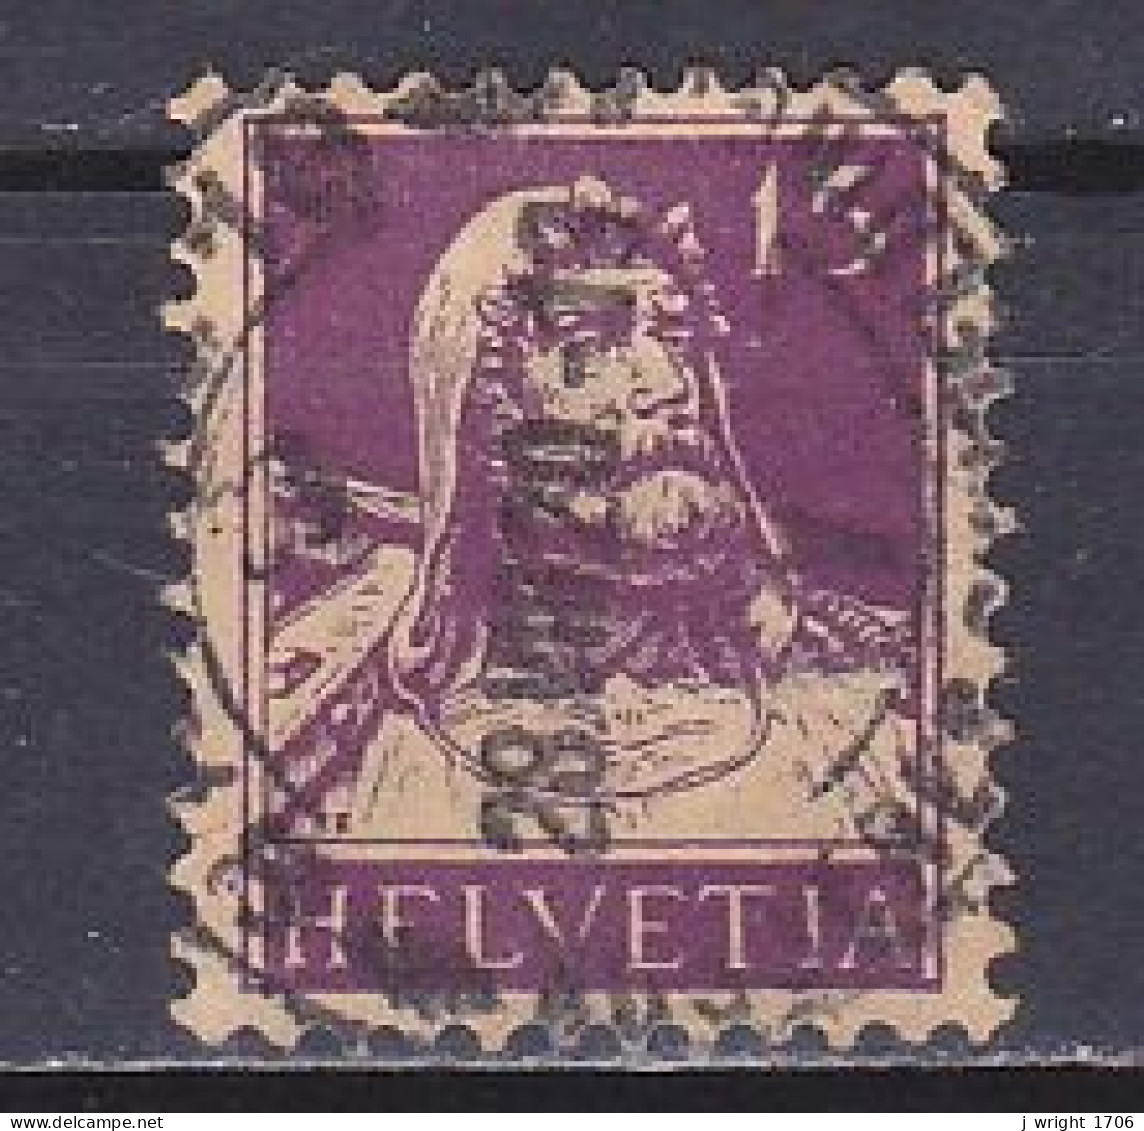 Switzerland, 1918, William Tell, 15c/Dark Violet, USED - Gebraucht